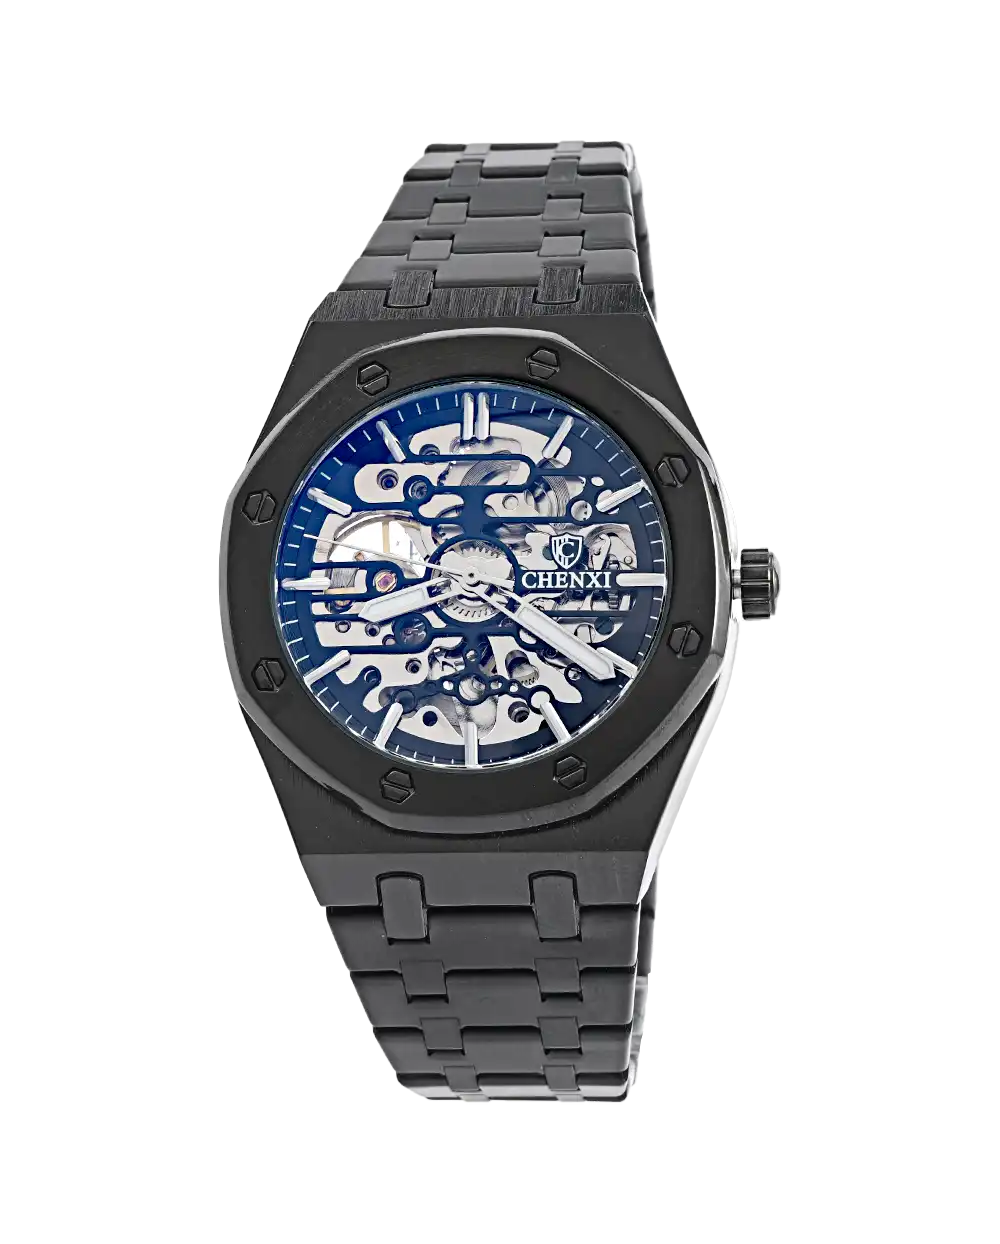 خرید ساعت مچی اتوماتیک مردانه چانگ شی CHENXI صفحه اسکلتون مدل 1695 با بهترین قیمت به همراه ارسال رایگان به سراسر ایران و جعبه ی مخصوص کادو